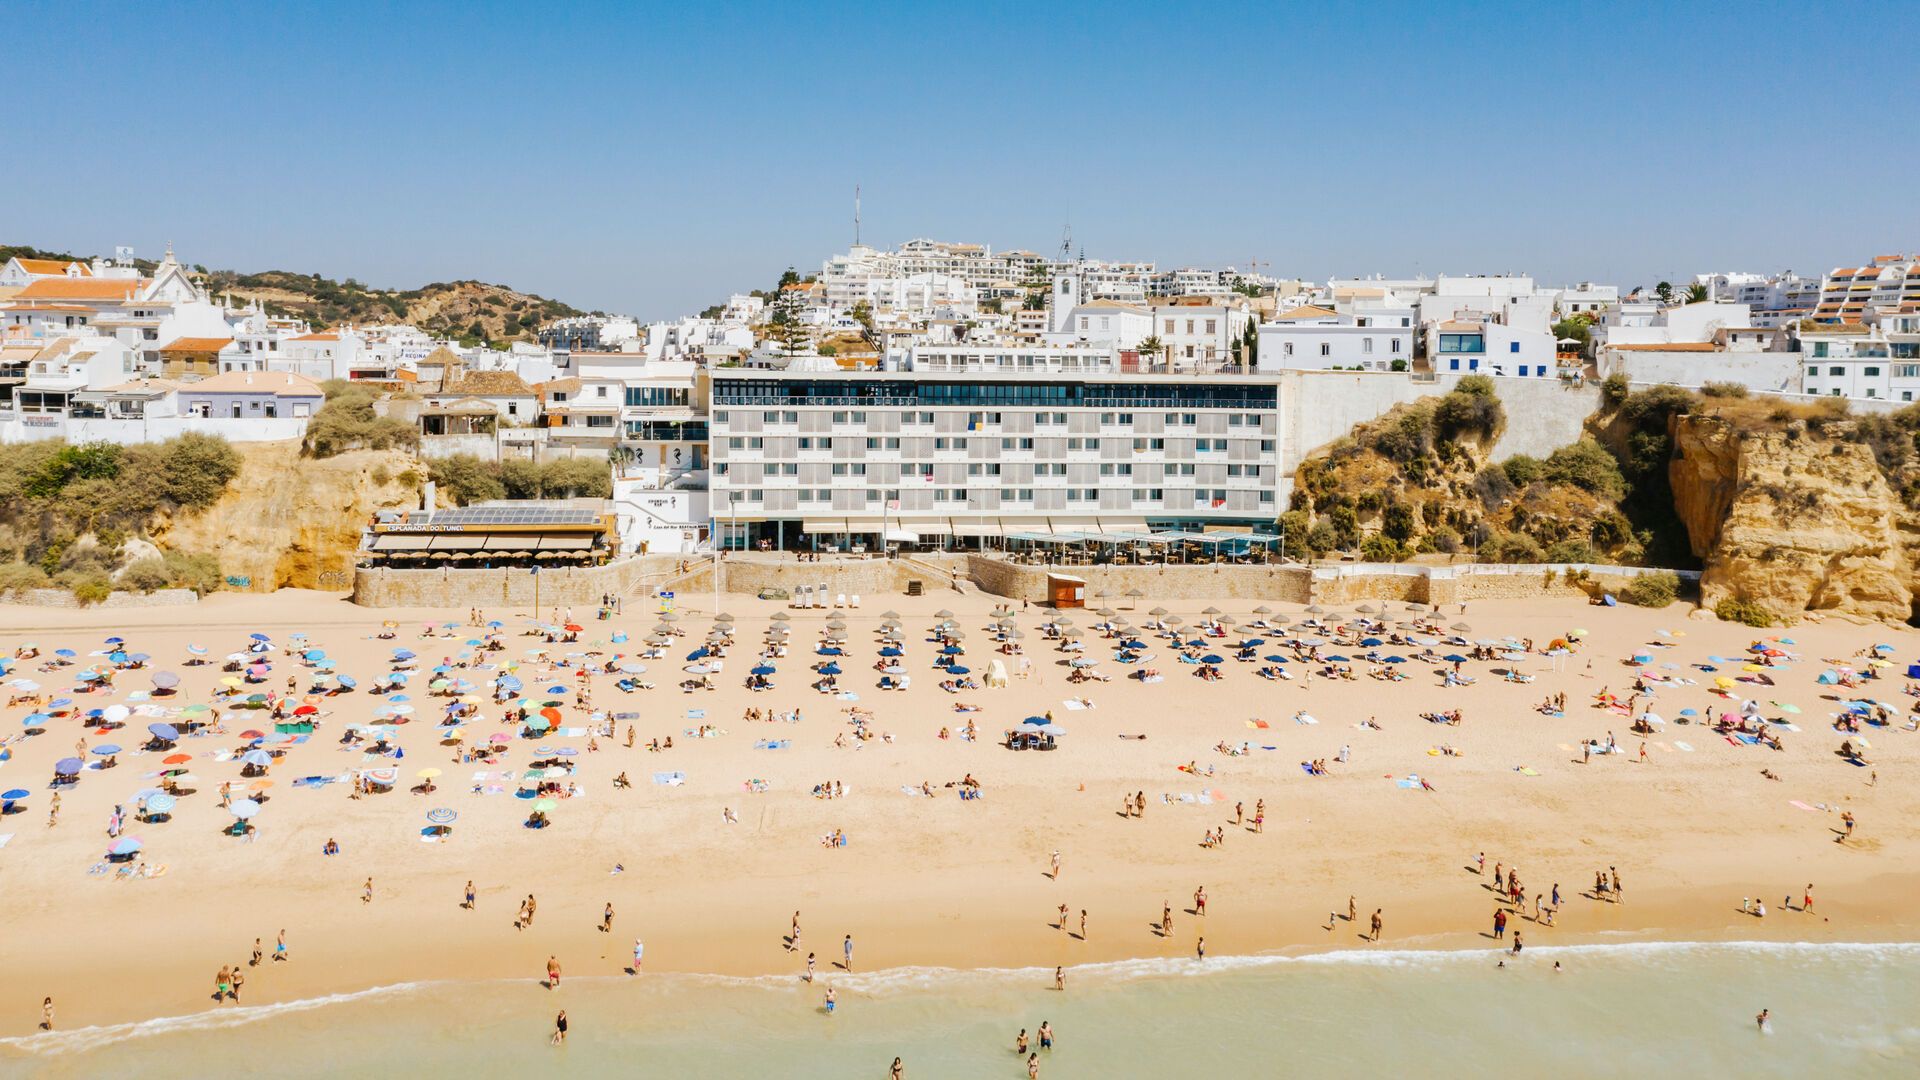 Portugal - Algarve - Hotel Sol e Mar 4*